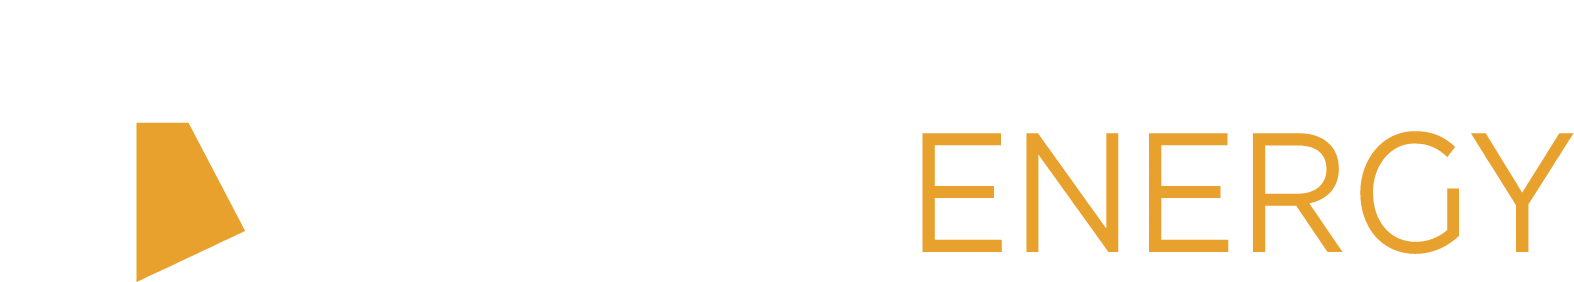 Topaz Energy logo large for dark backgrounds (transparent PNG)